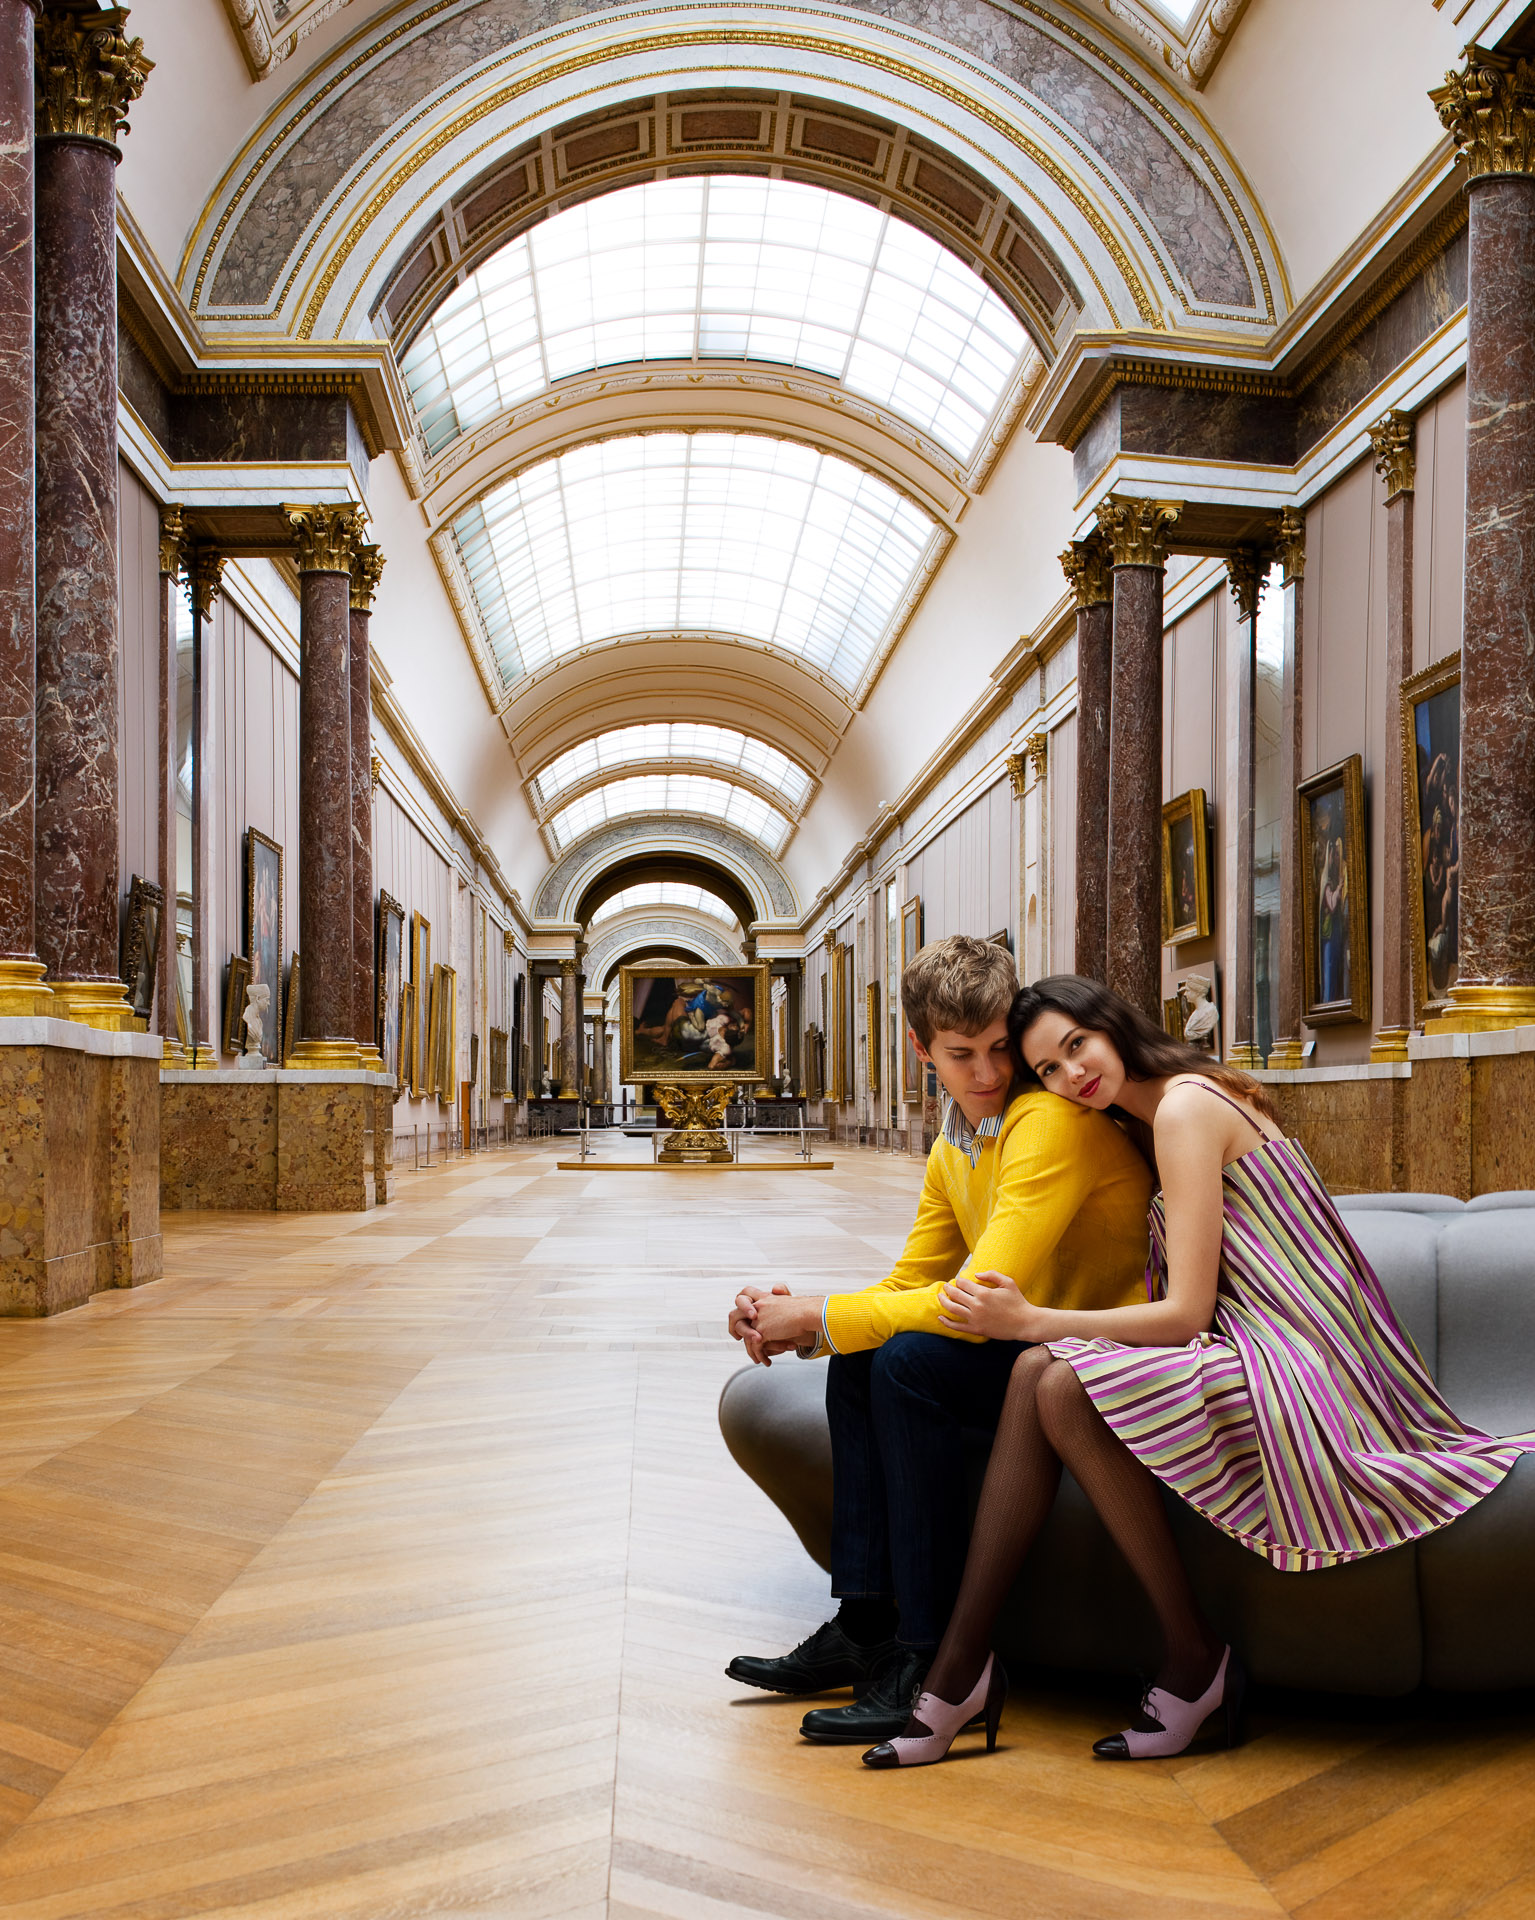 San Francisco lifestyle photographer - Louvre Museum in Paris, France